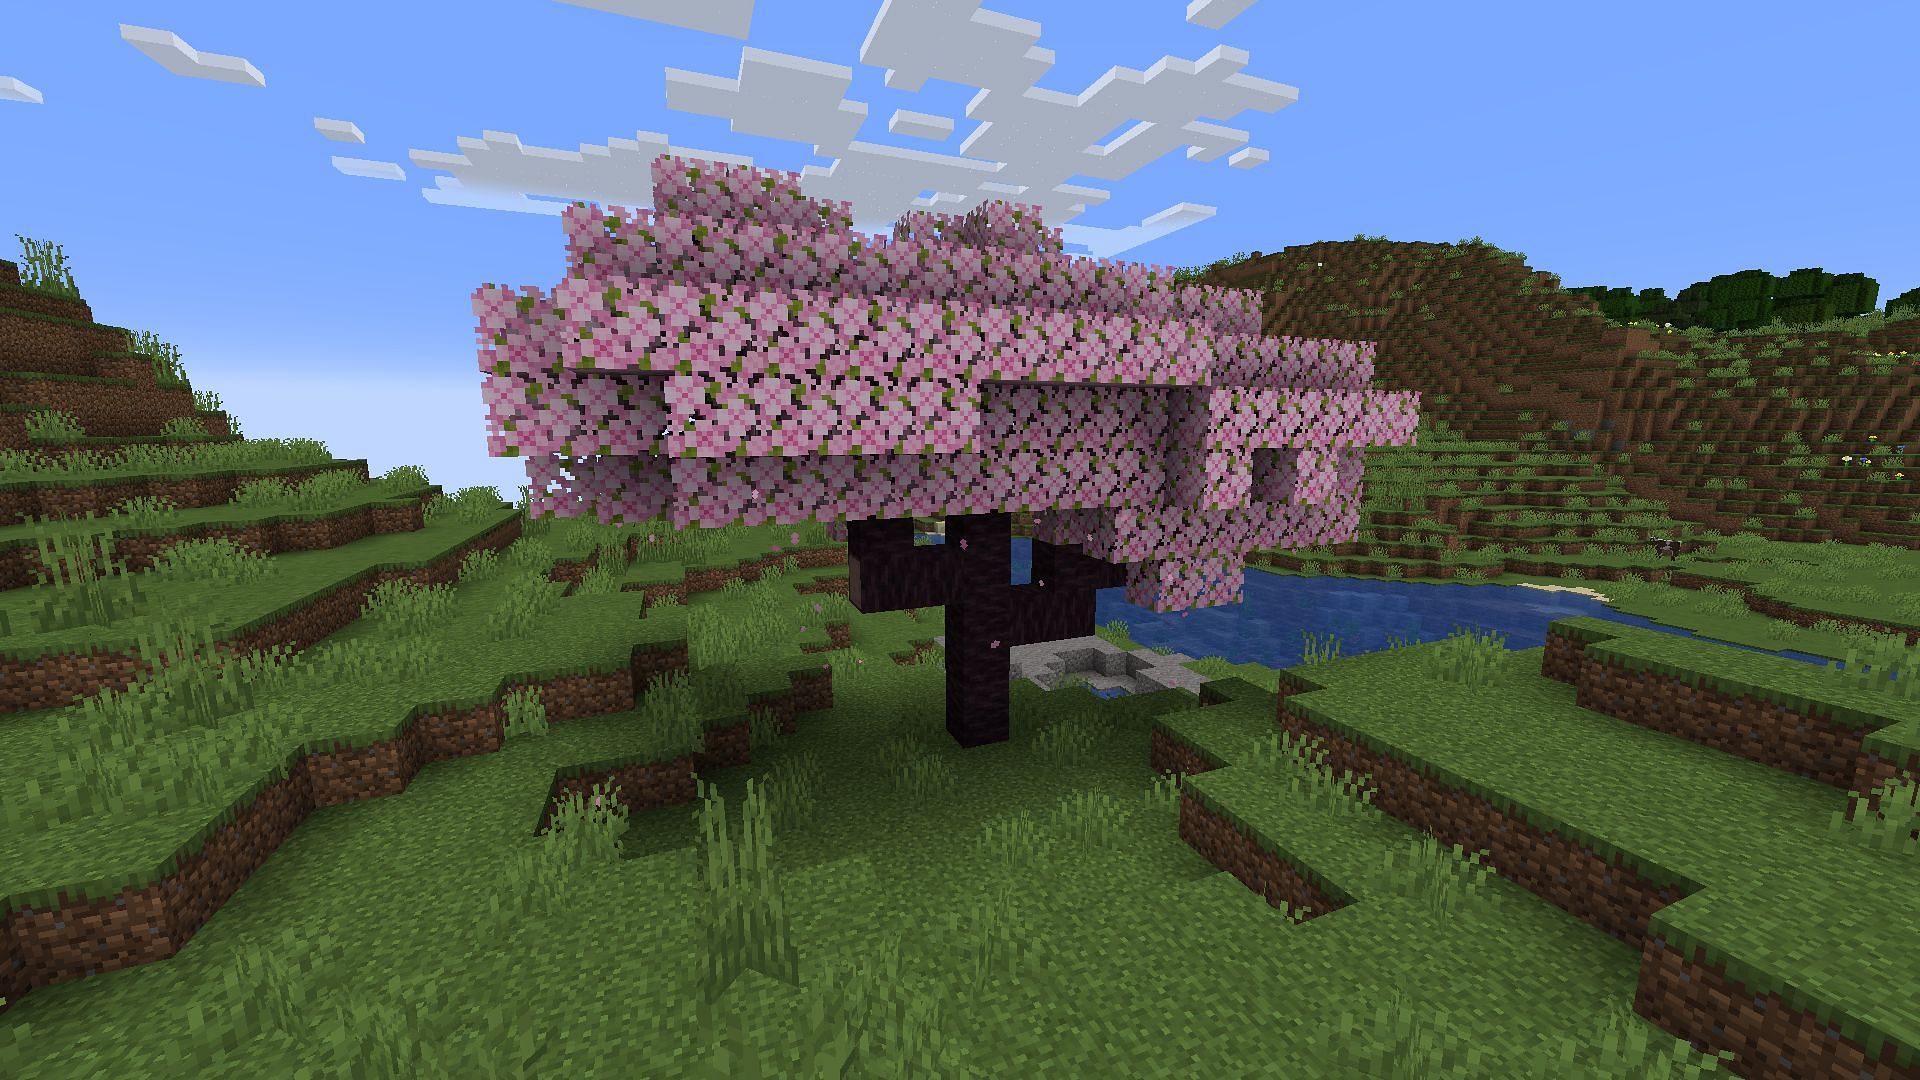 Cherry trees grow like many of Minecraft